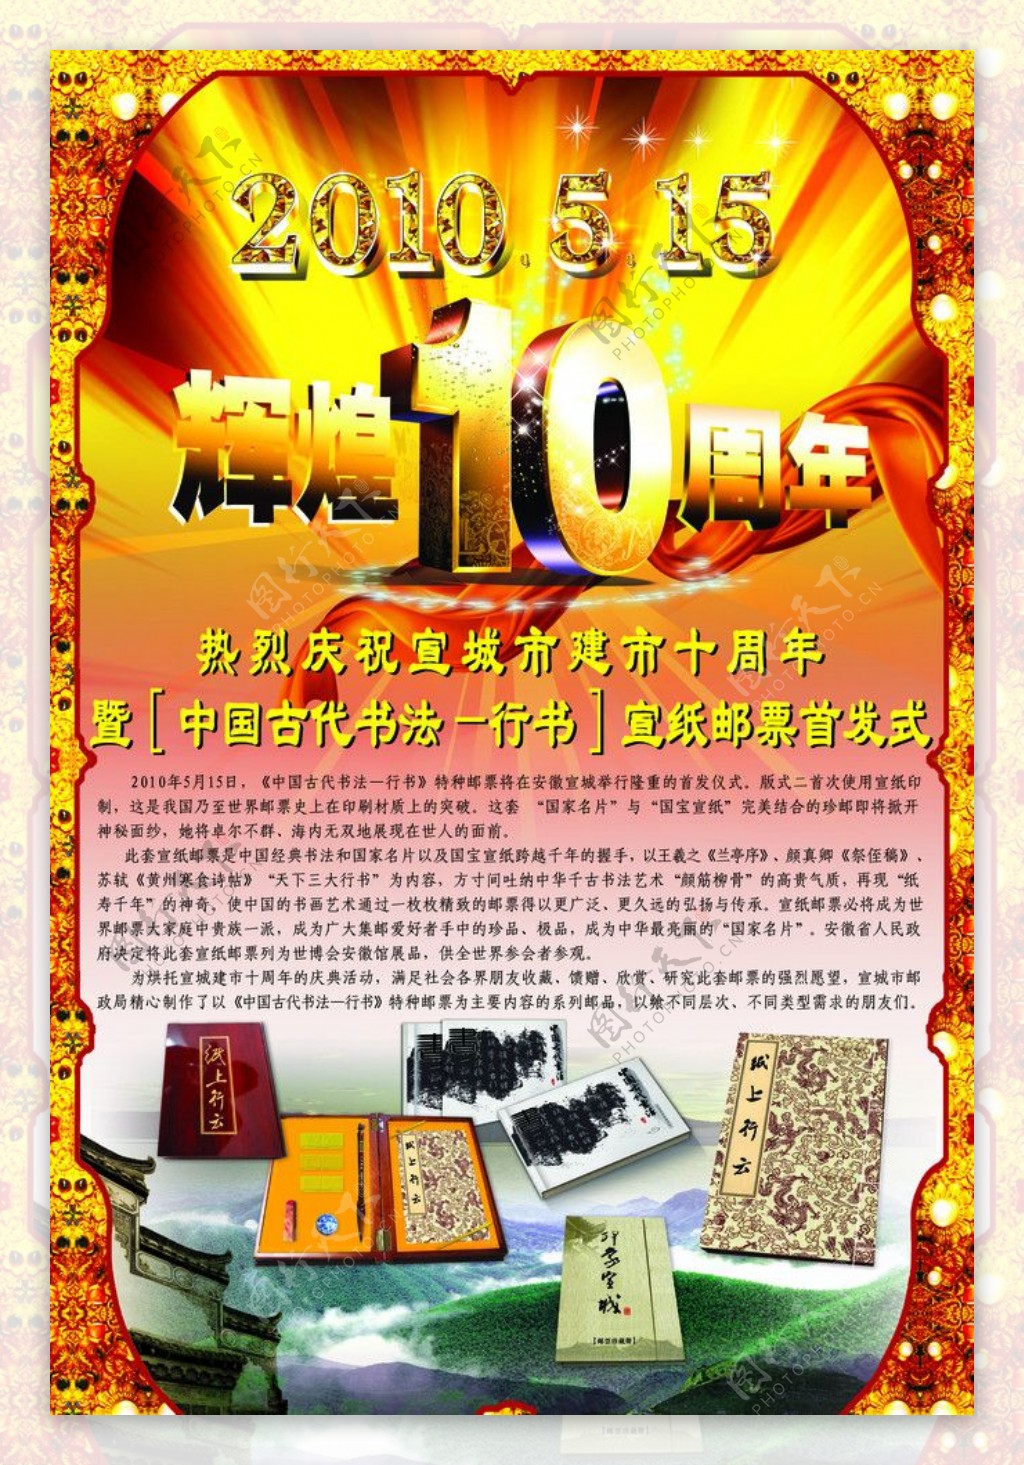 10周年纪念和宣纸邮票广告图片